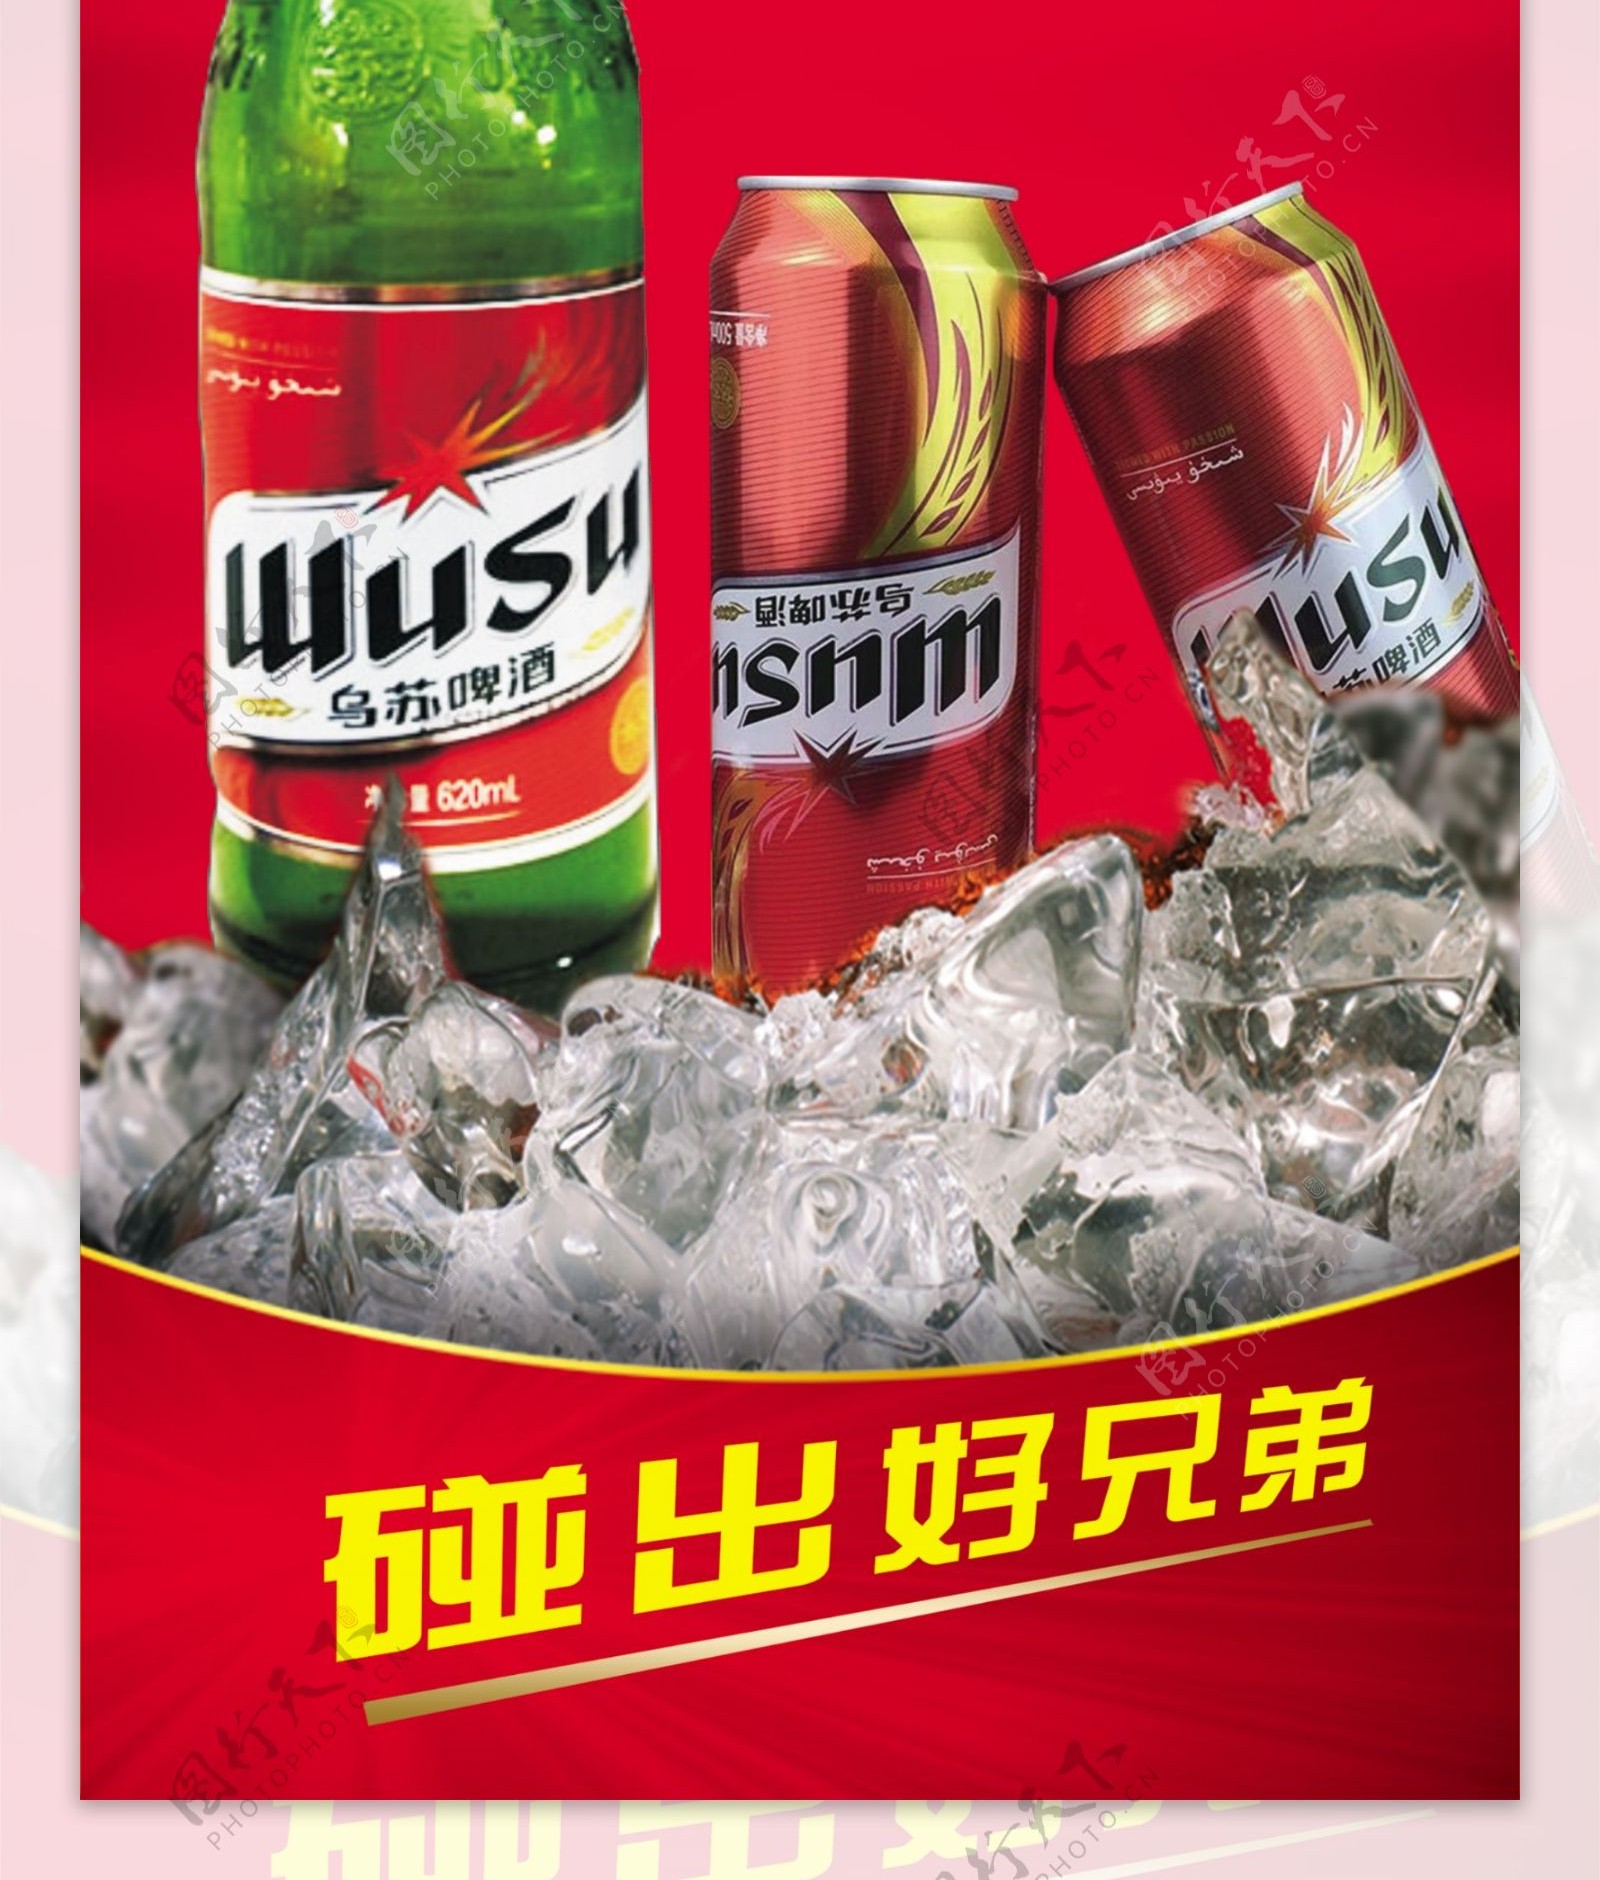 乌苏啤酒海报